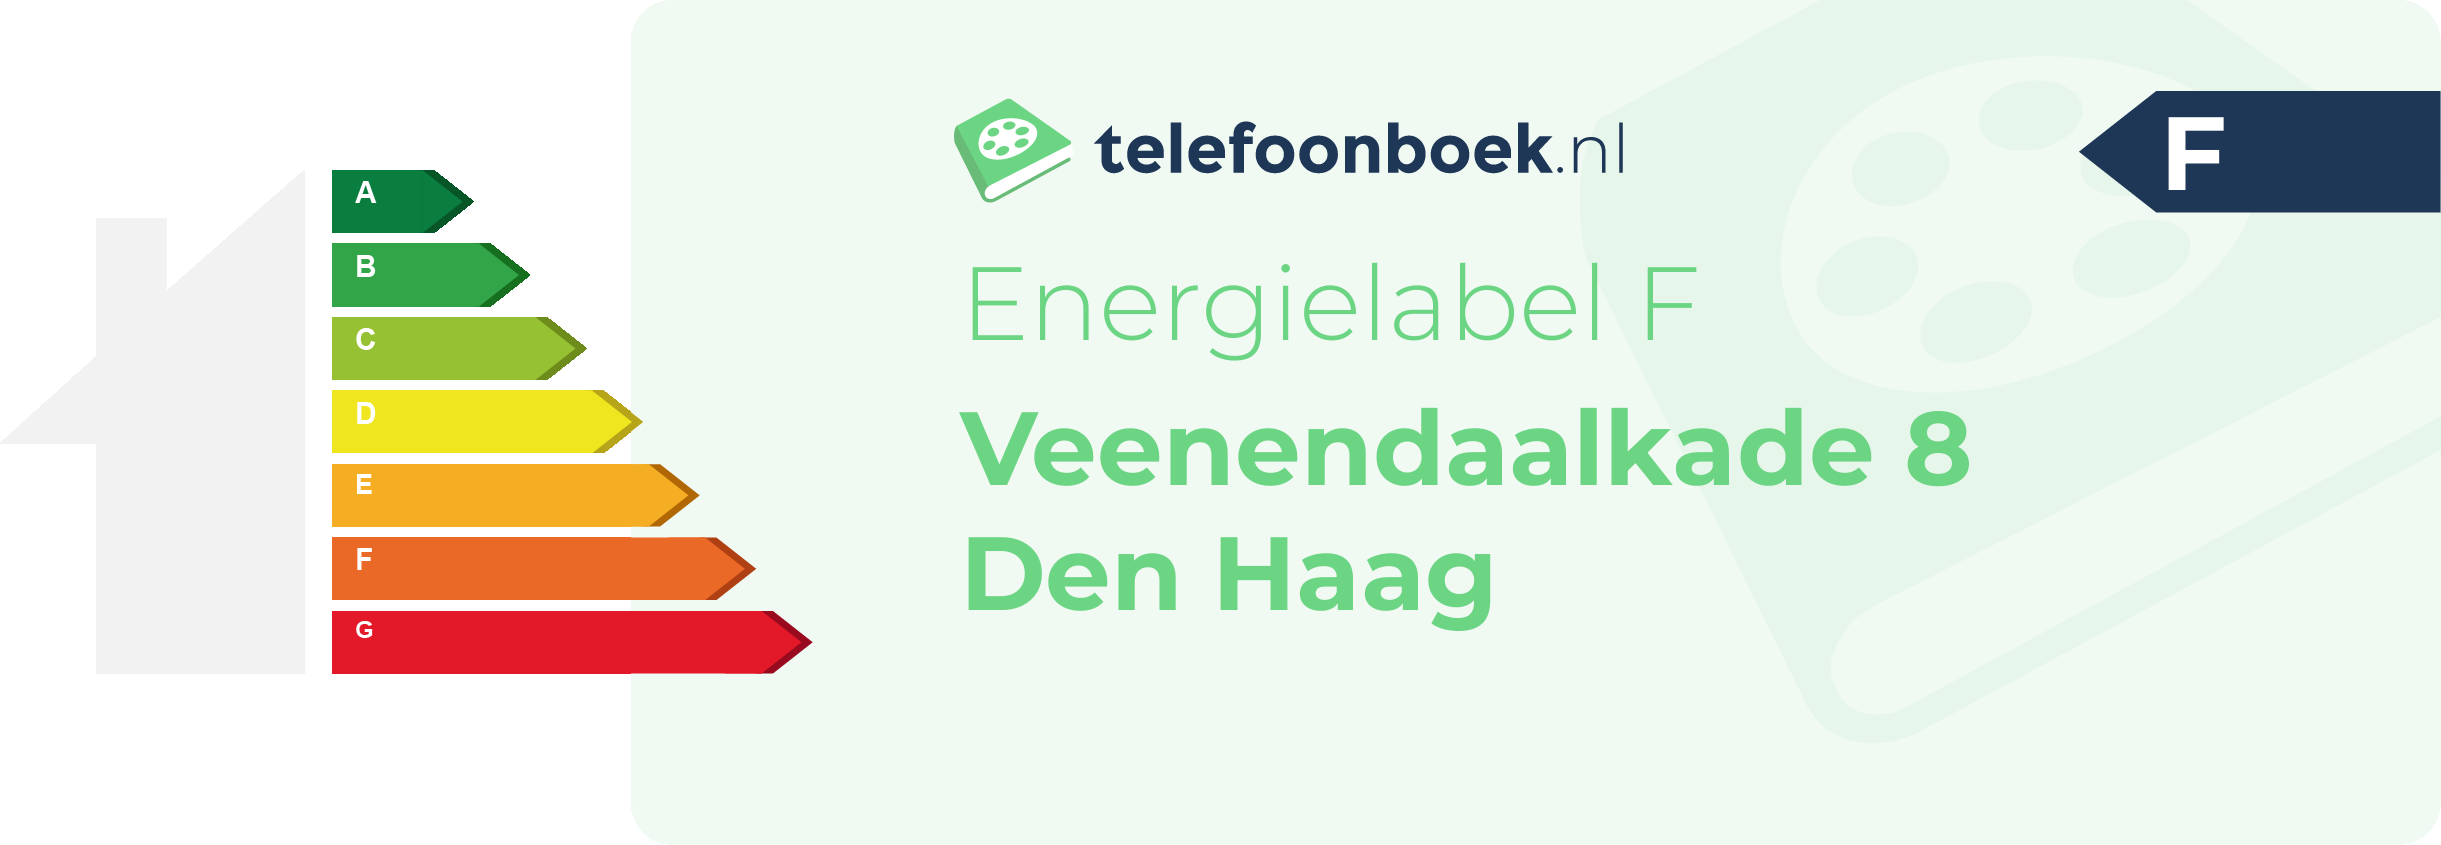 Energielabel Veenendaalkade 8 Den Haag